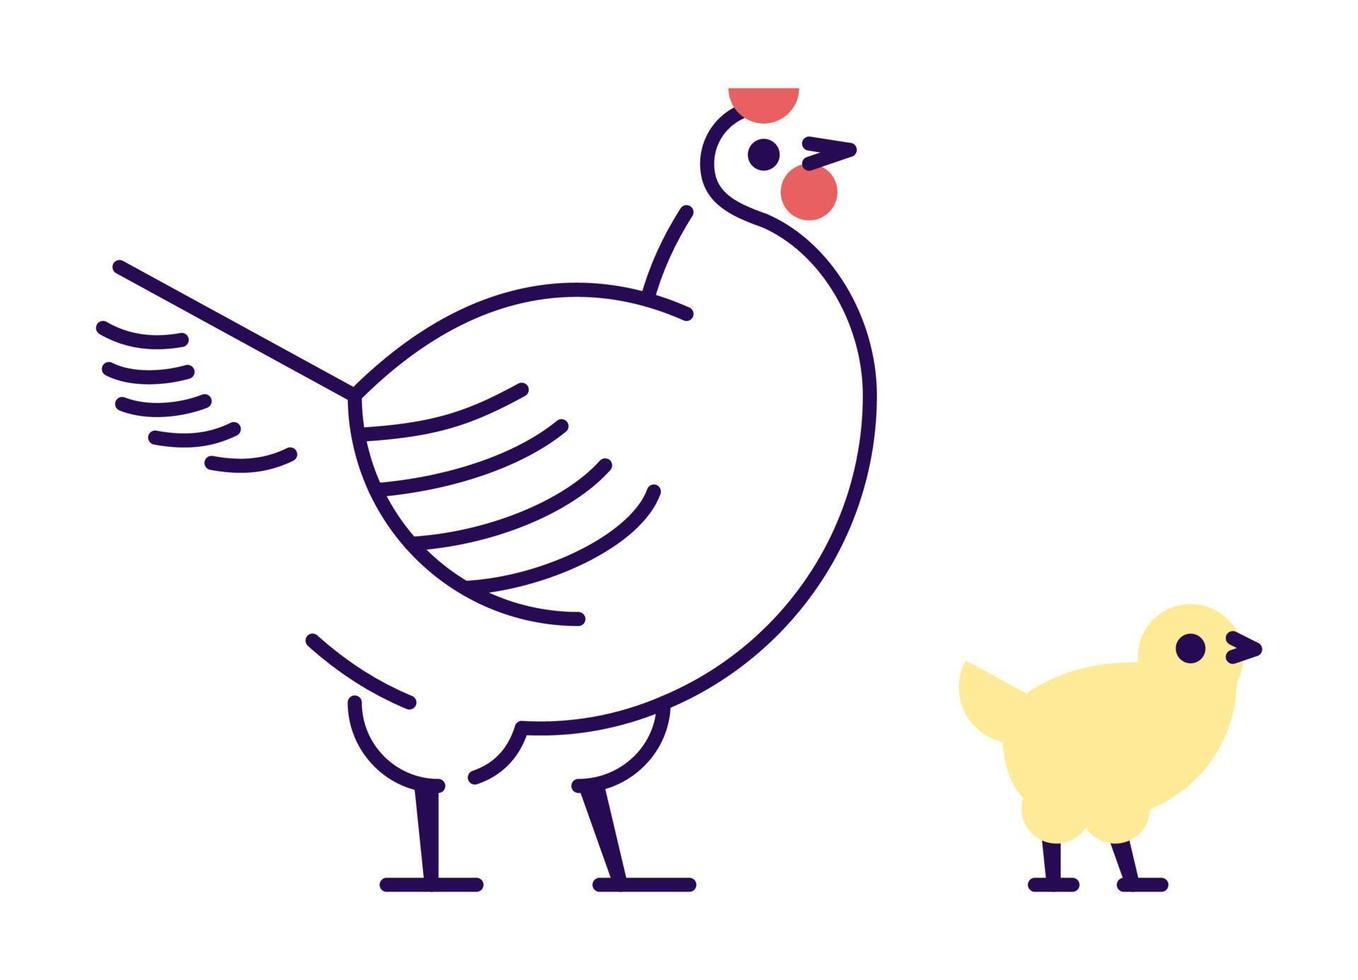 vit höna med gul chick platt vektorillustration. tama fågeluppfödningskoncept. mor kyckling isolerade designelement med kontur. fjäderfäuppfödning, hennery symbol på vit bakgrund vektor